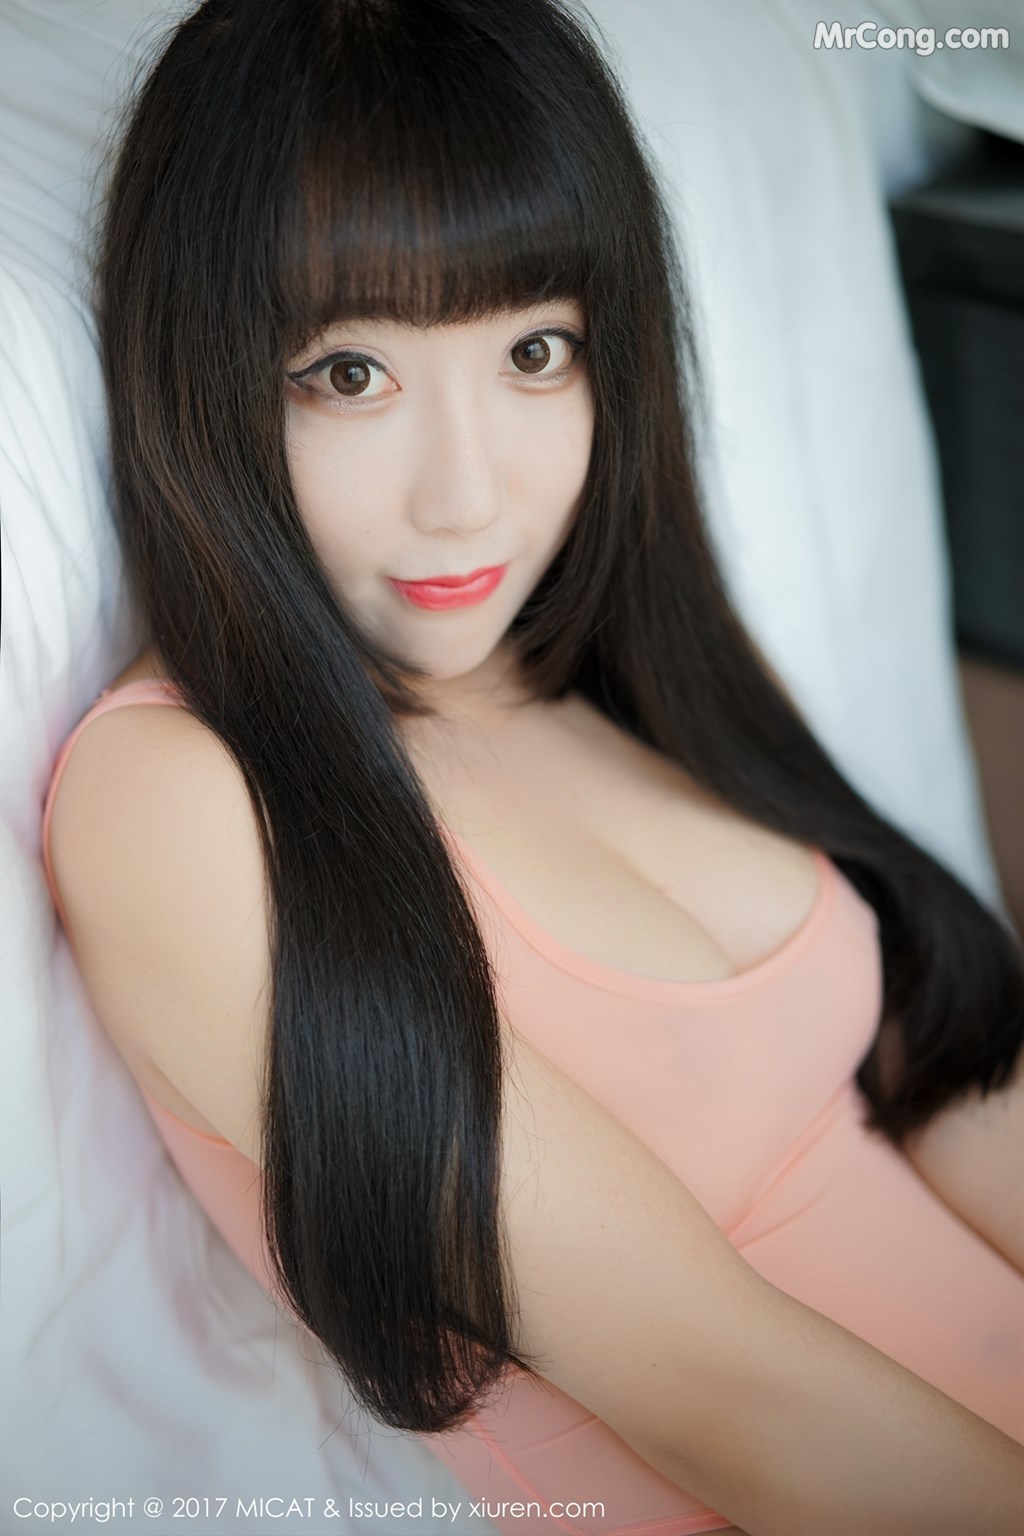 MiCat Vol.027: Model Xia Xiao Xiao (夏 笑笑 Summer) (48 photos)